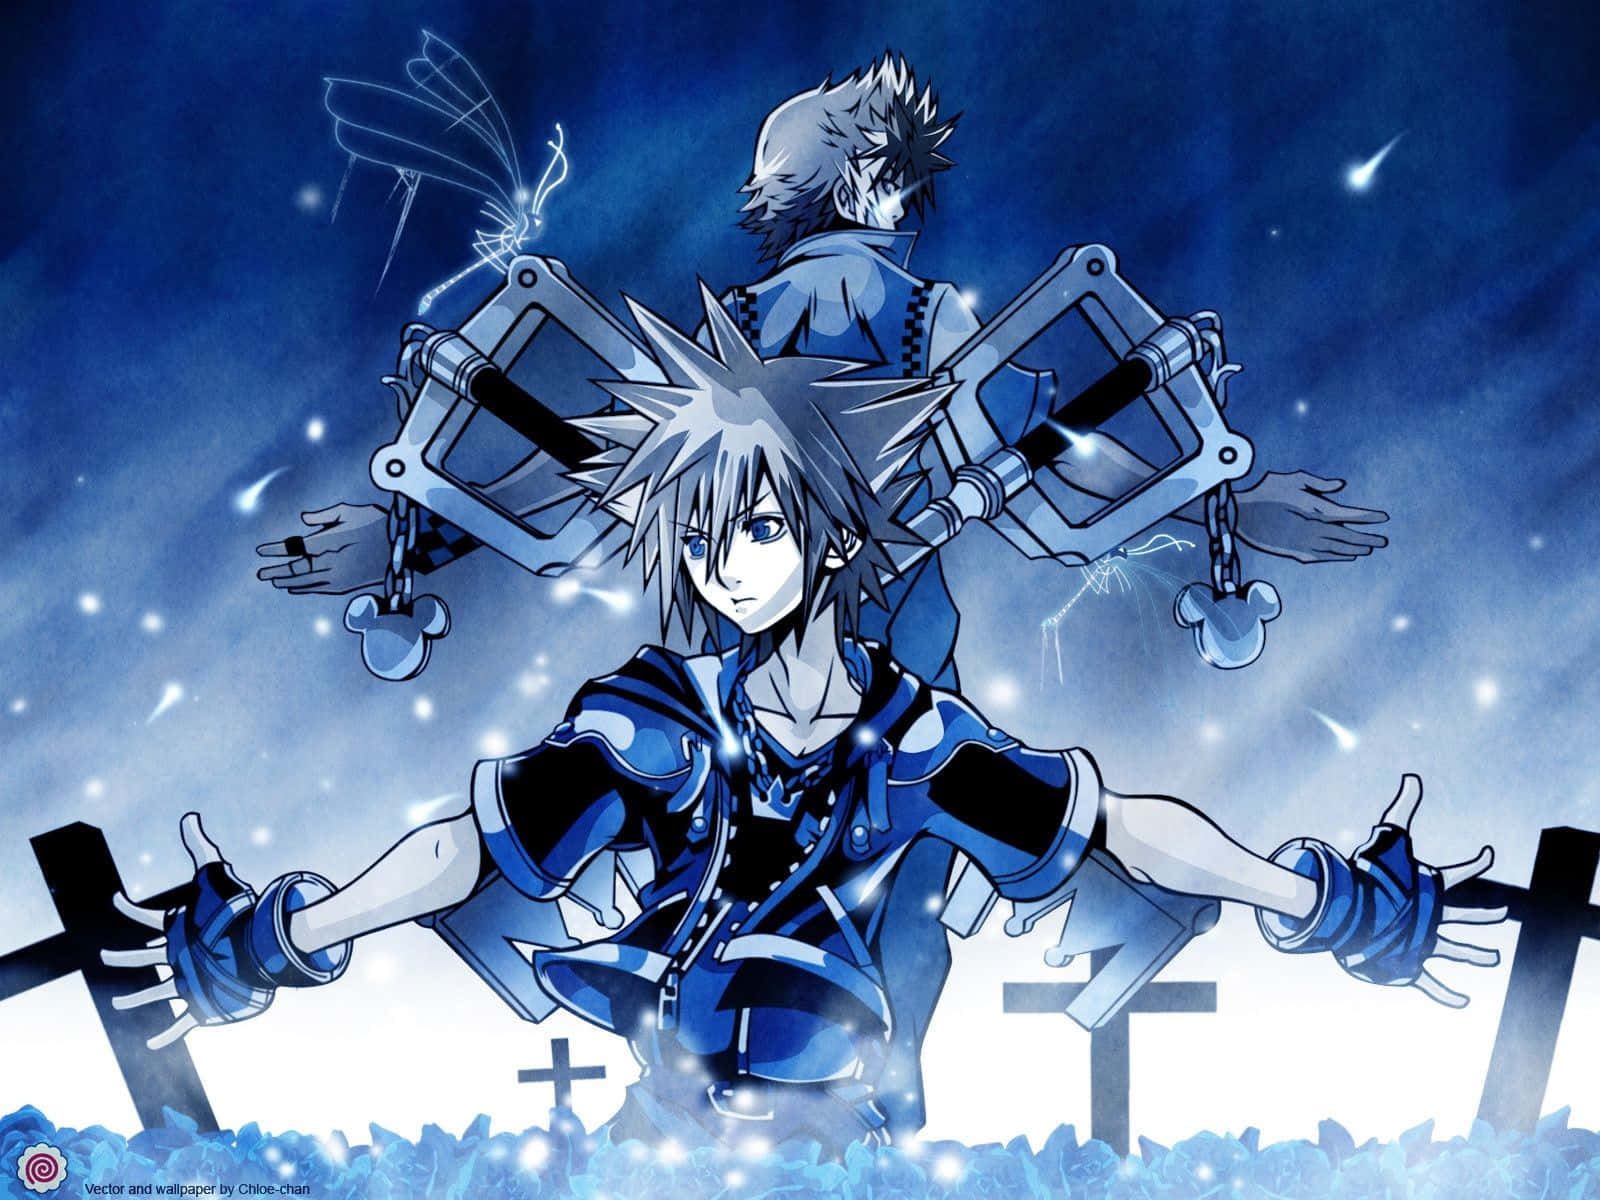 Aqua, the protagonist of Kingdom Hearts Wallpaper